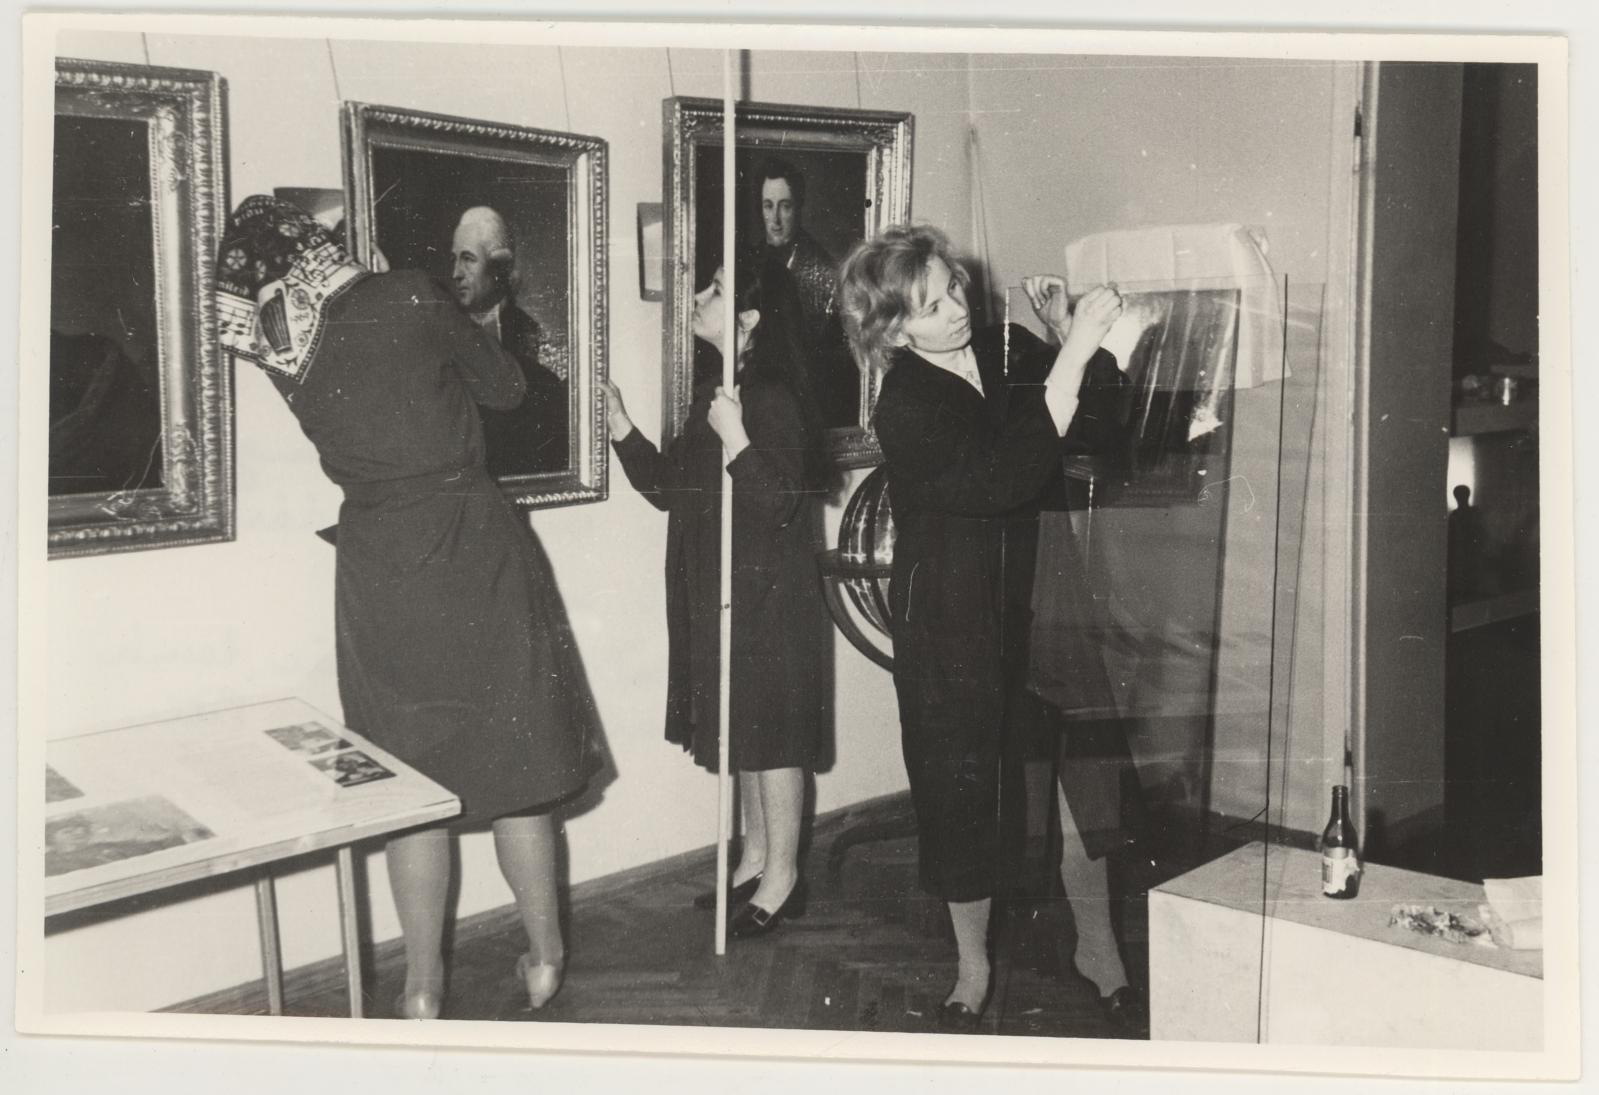 Näituse "Ennistatud kultuuriväärtused" ettevalmistamine 12.11.1971. Ees paremal - Krista Piirimäe, tema kõrval Epp Eltermann ja Mari Pill